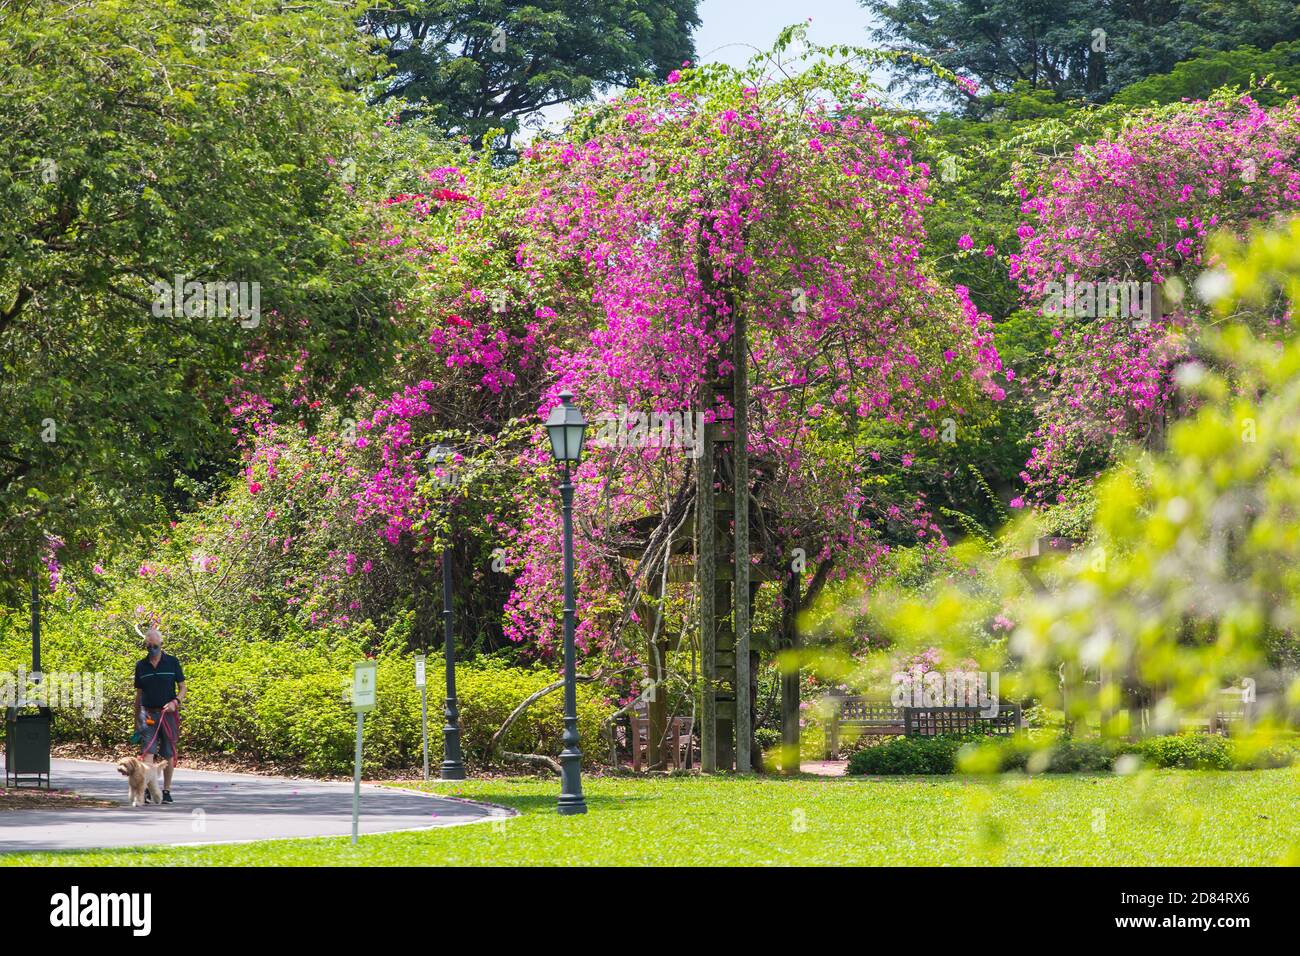 Un vecchio cinese sta camminando con il suo cane nel parco, il parco è fiorito con la bellissima Bougainville. GIARDINI BOTANICI DI SINGAPORE. Foto Stock